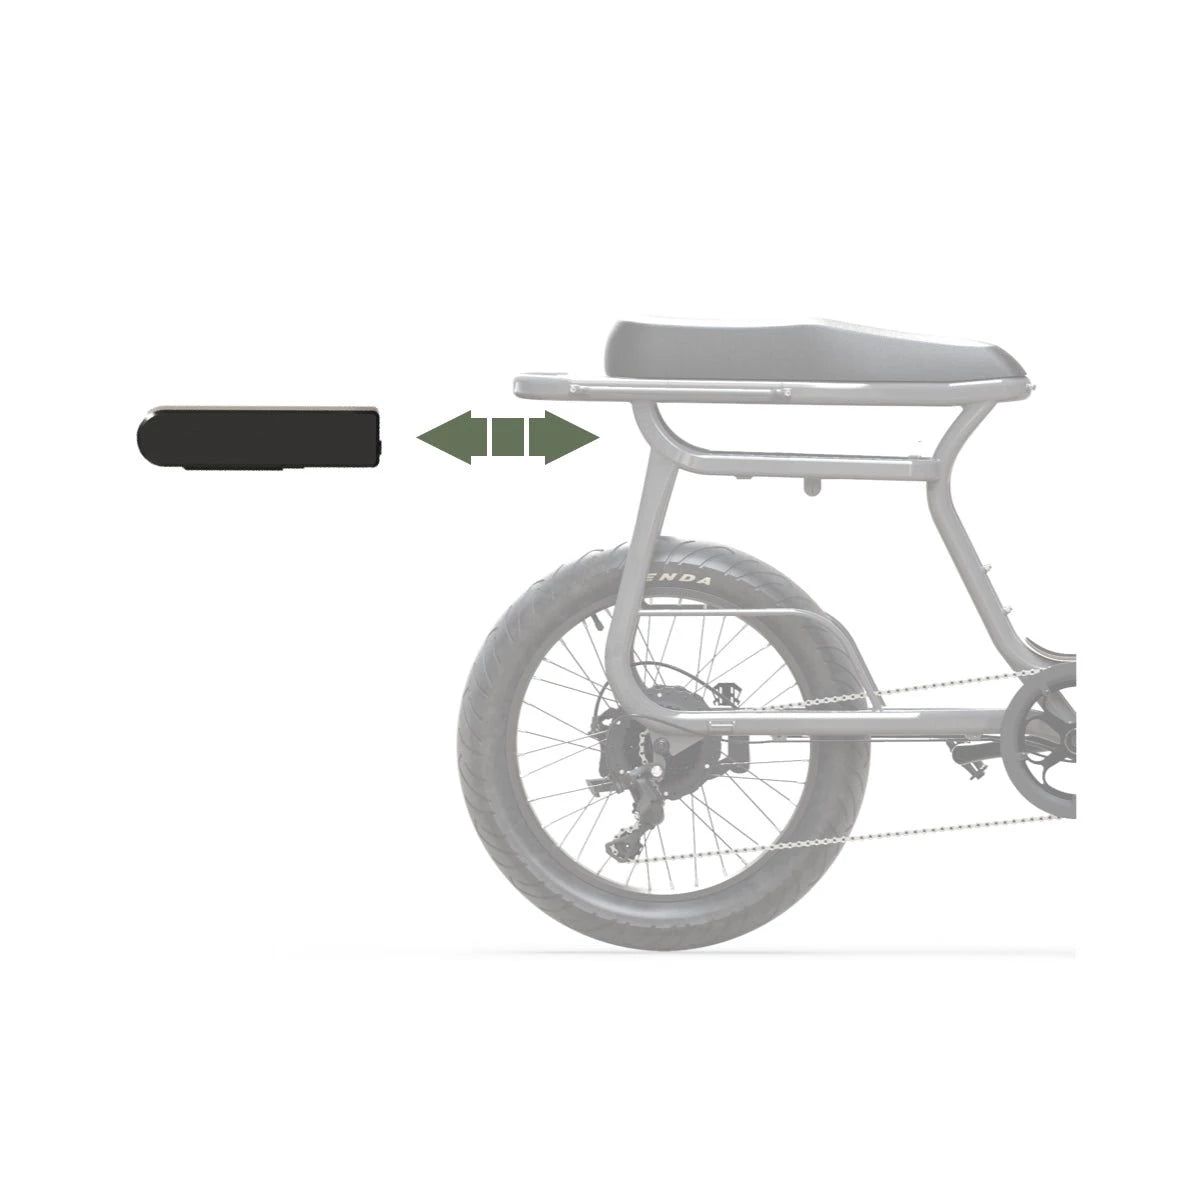 Batterie standard 614 Wh pour vélo électrique Yuvy – Elwing